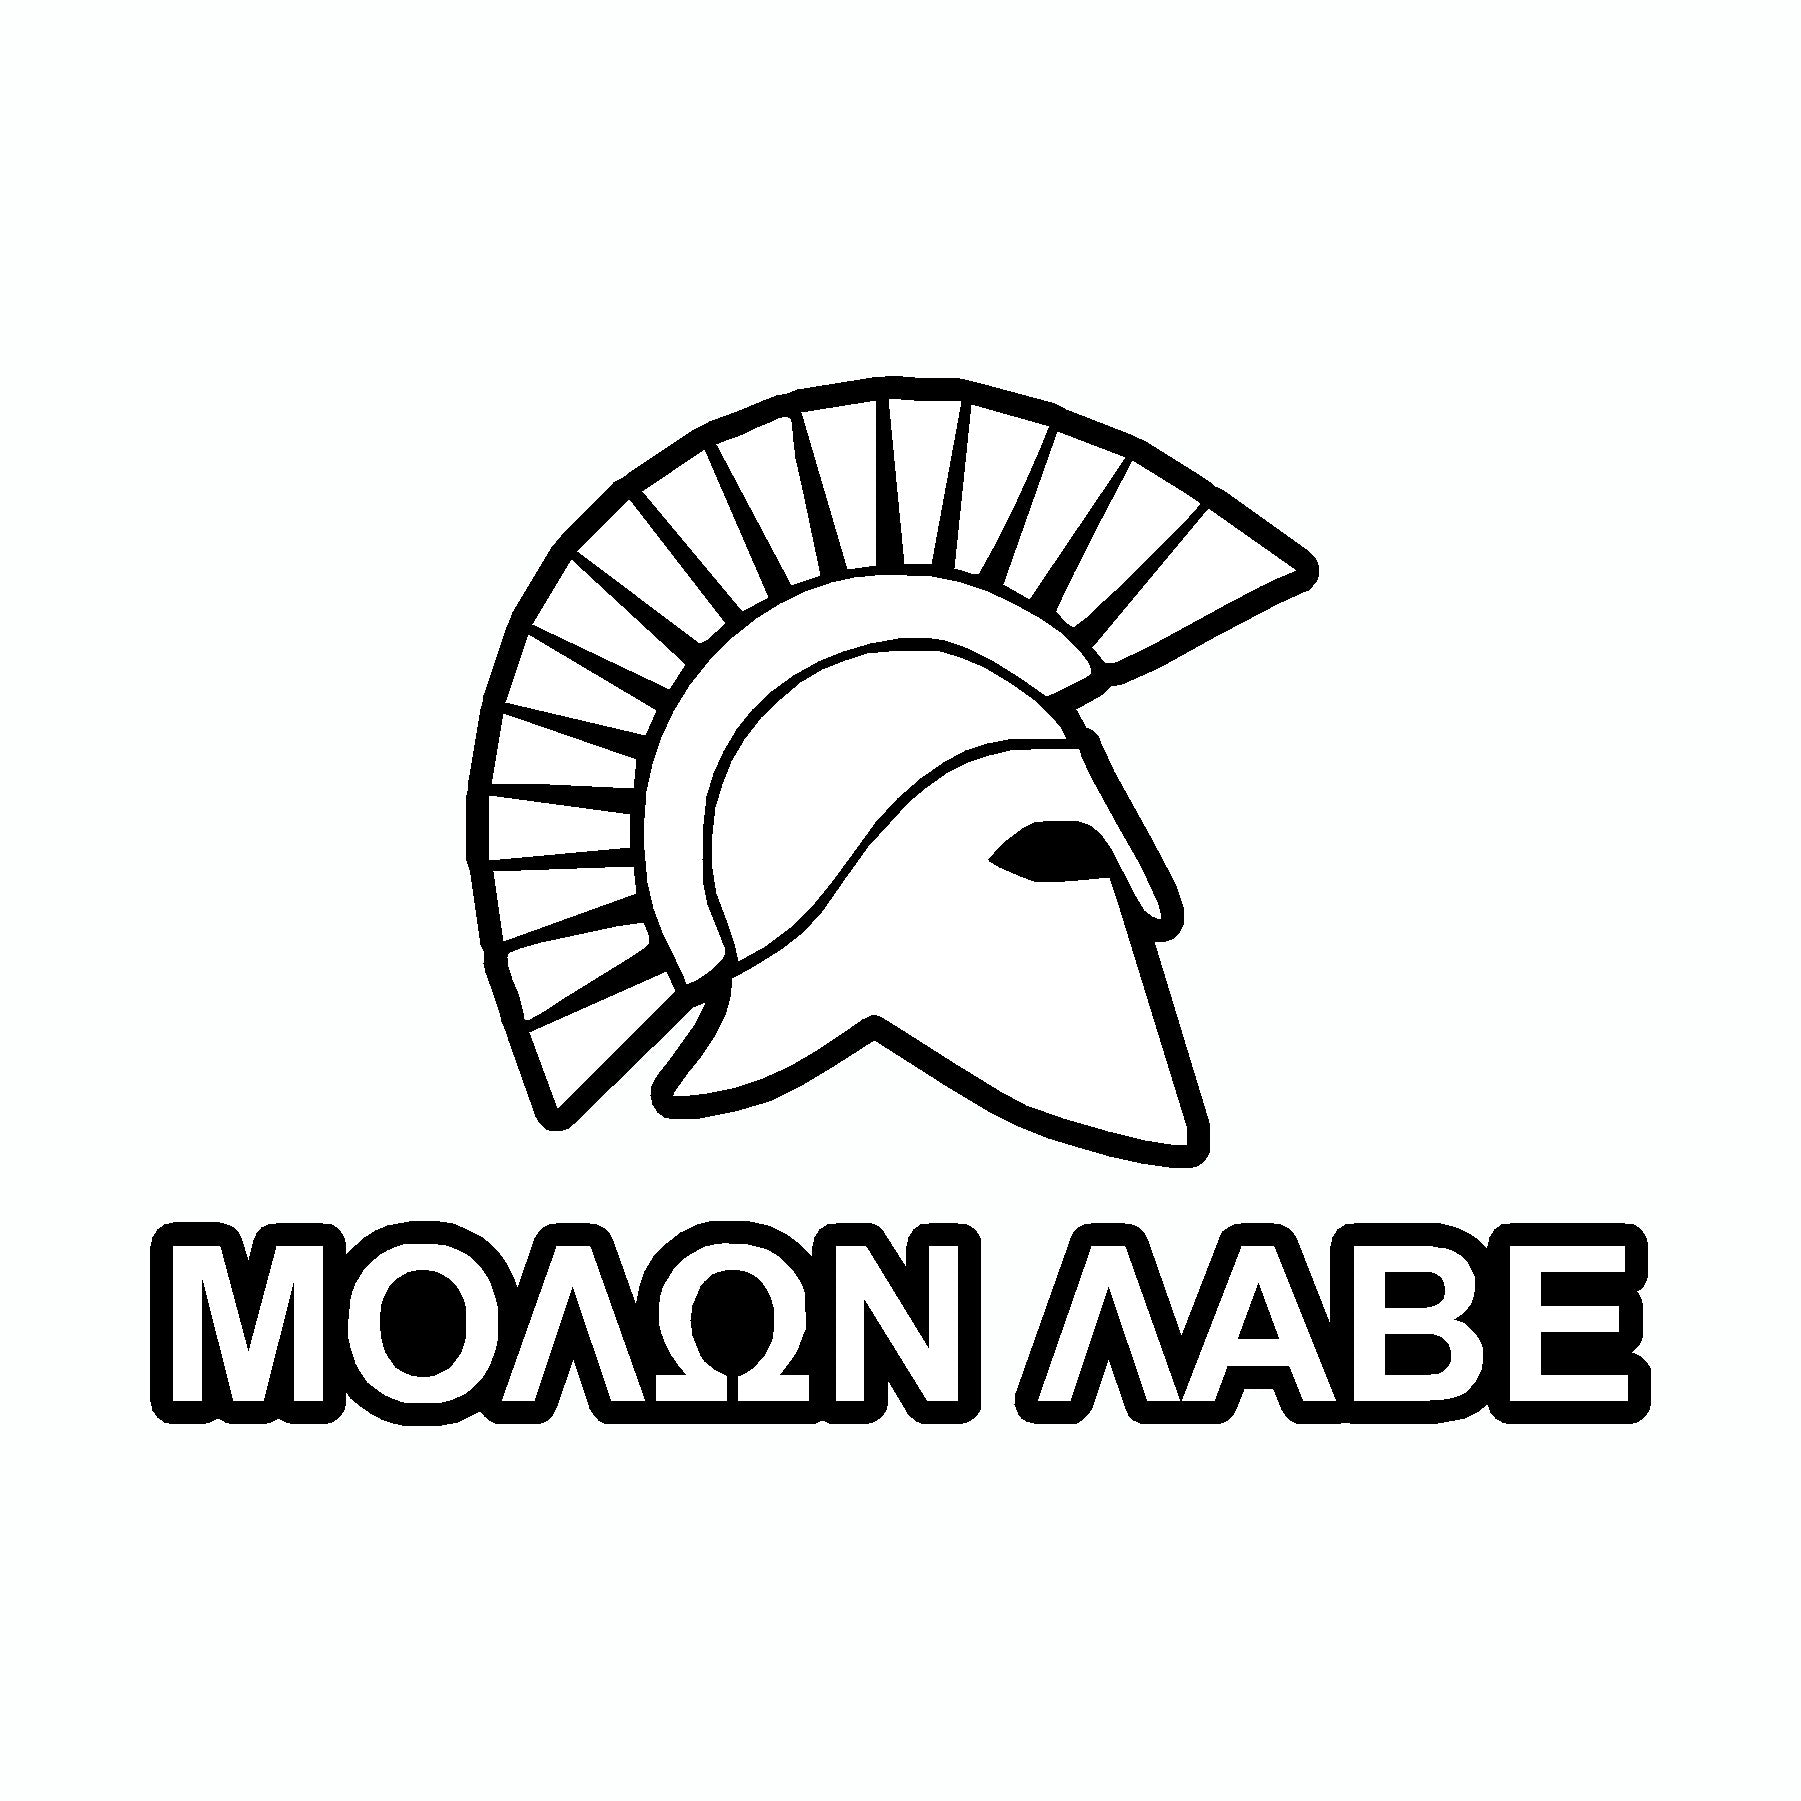 Molon Labe Spartan Helmet White Come And Take It 2nd Amendment Car Sticker